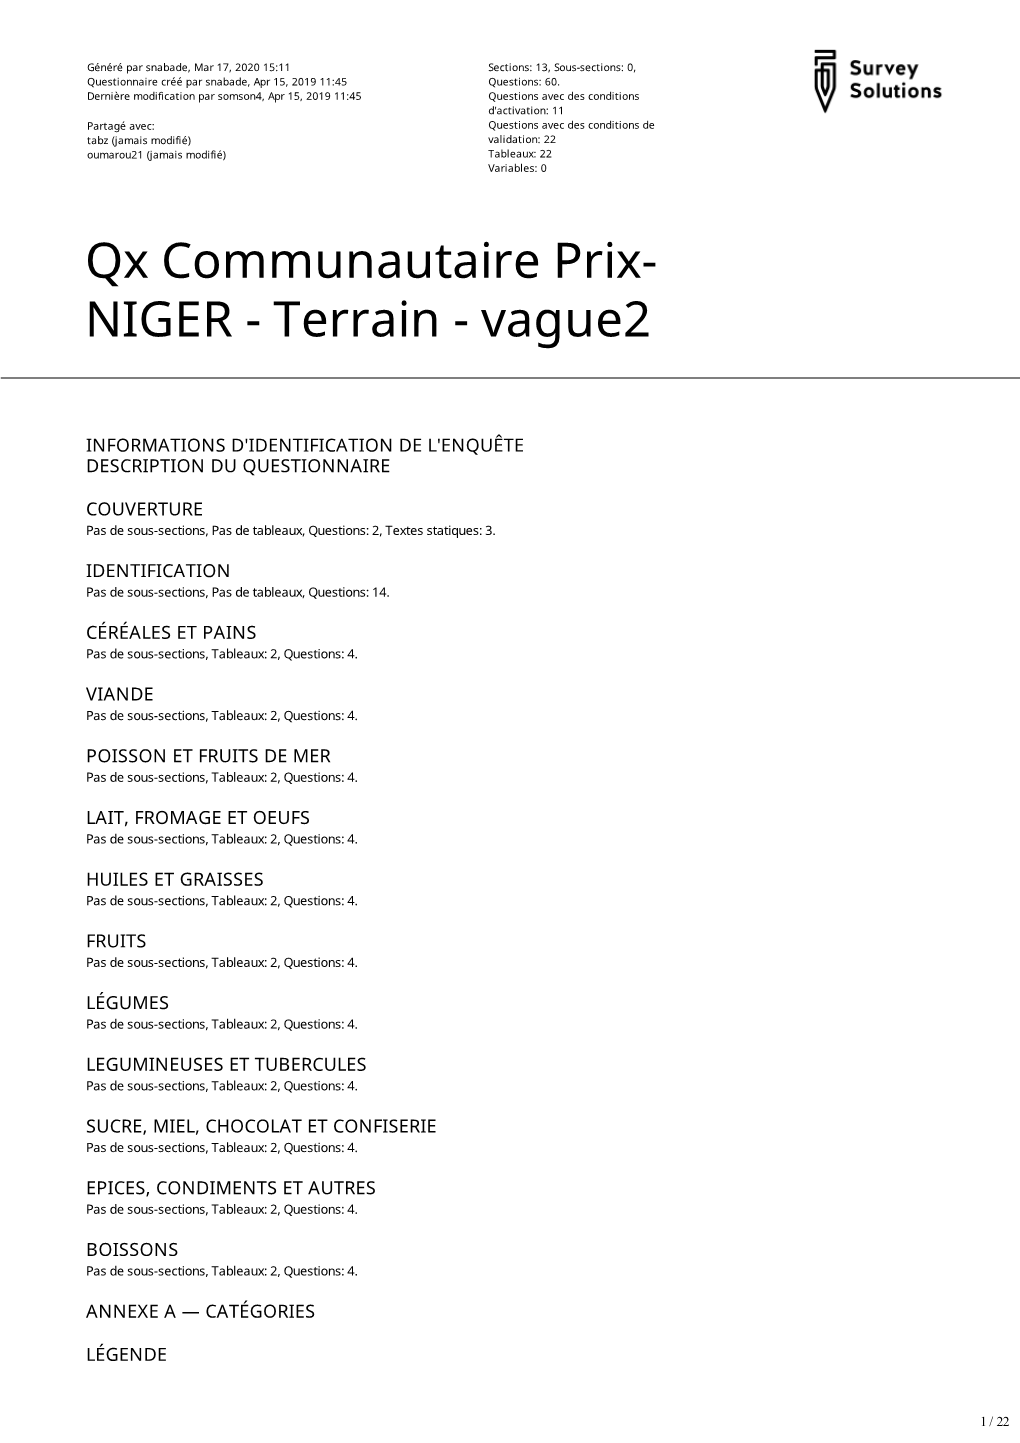 Qx Communautaire Prix- NIGER - Terrain - Vague2